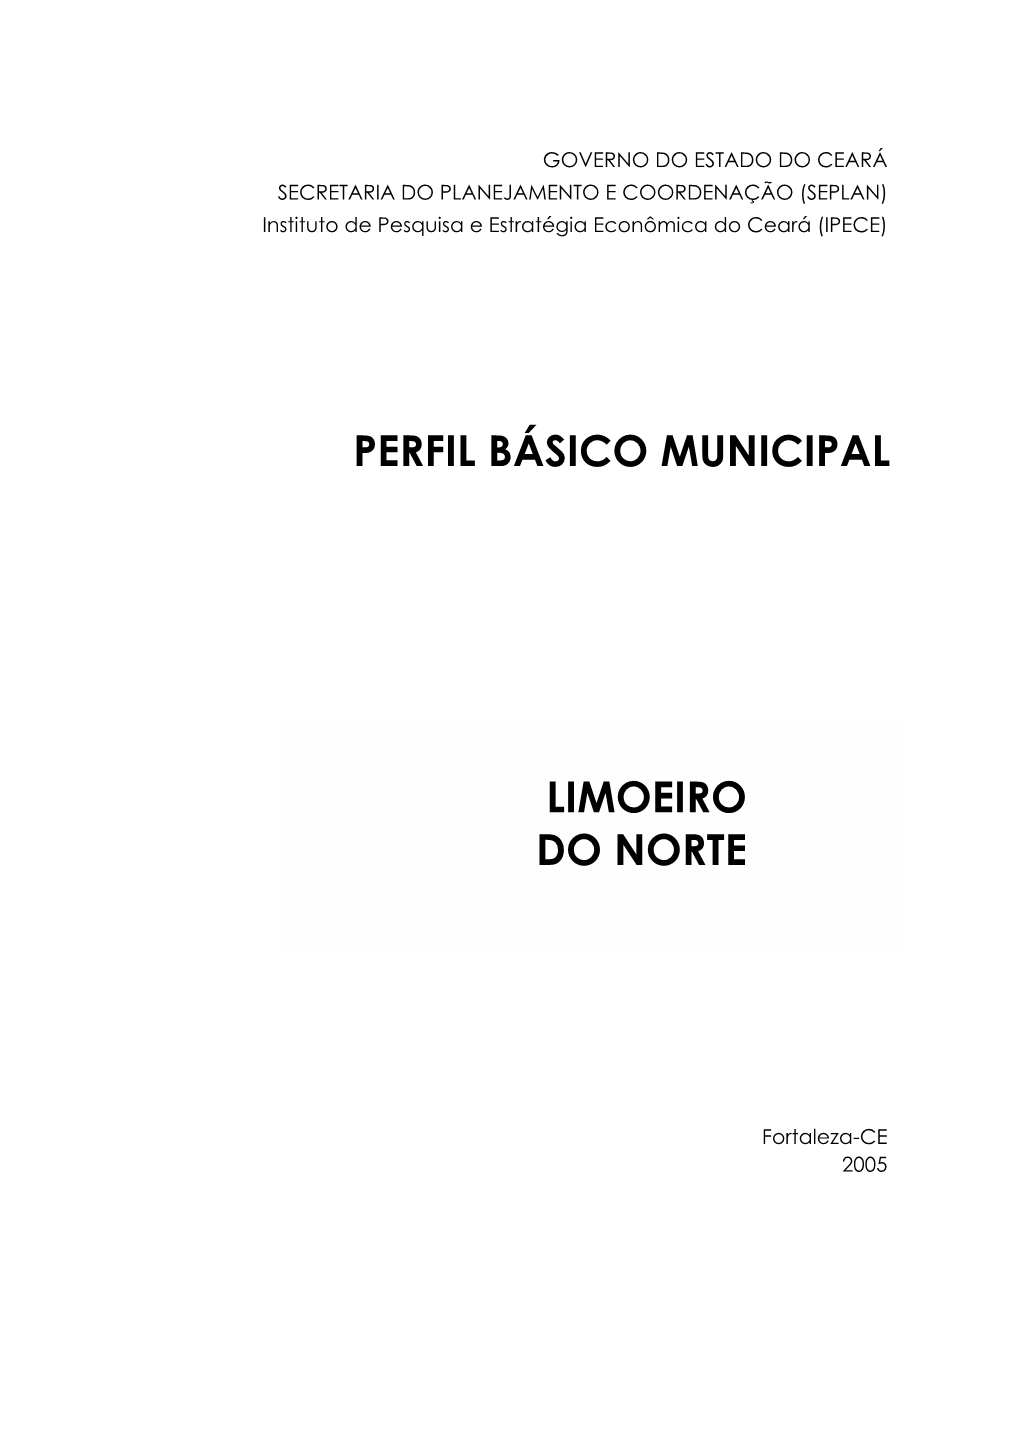 Perfil Básico Municipal LIMOEIRO DO NORTE 5